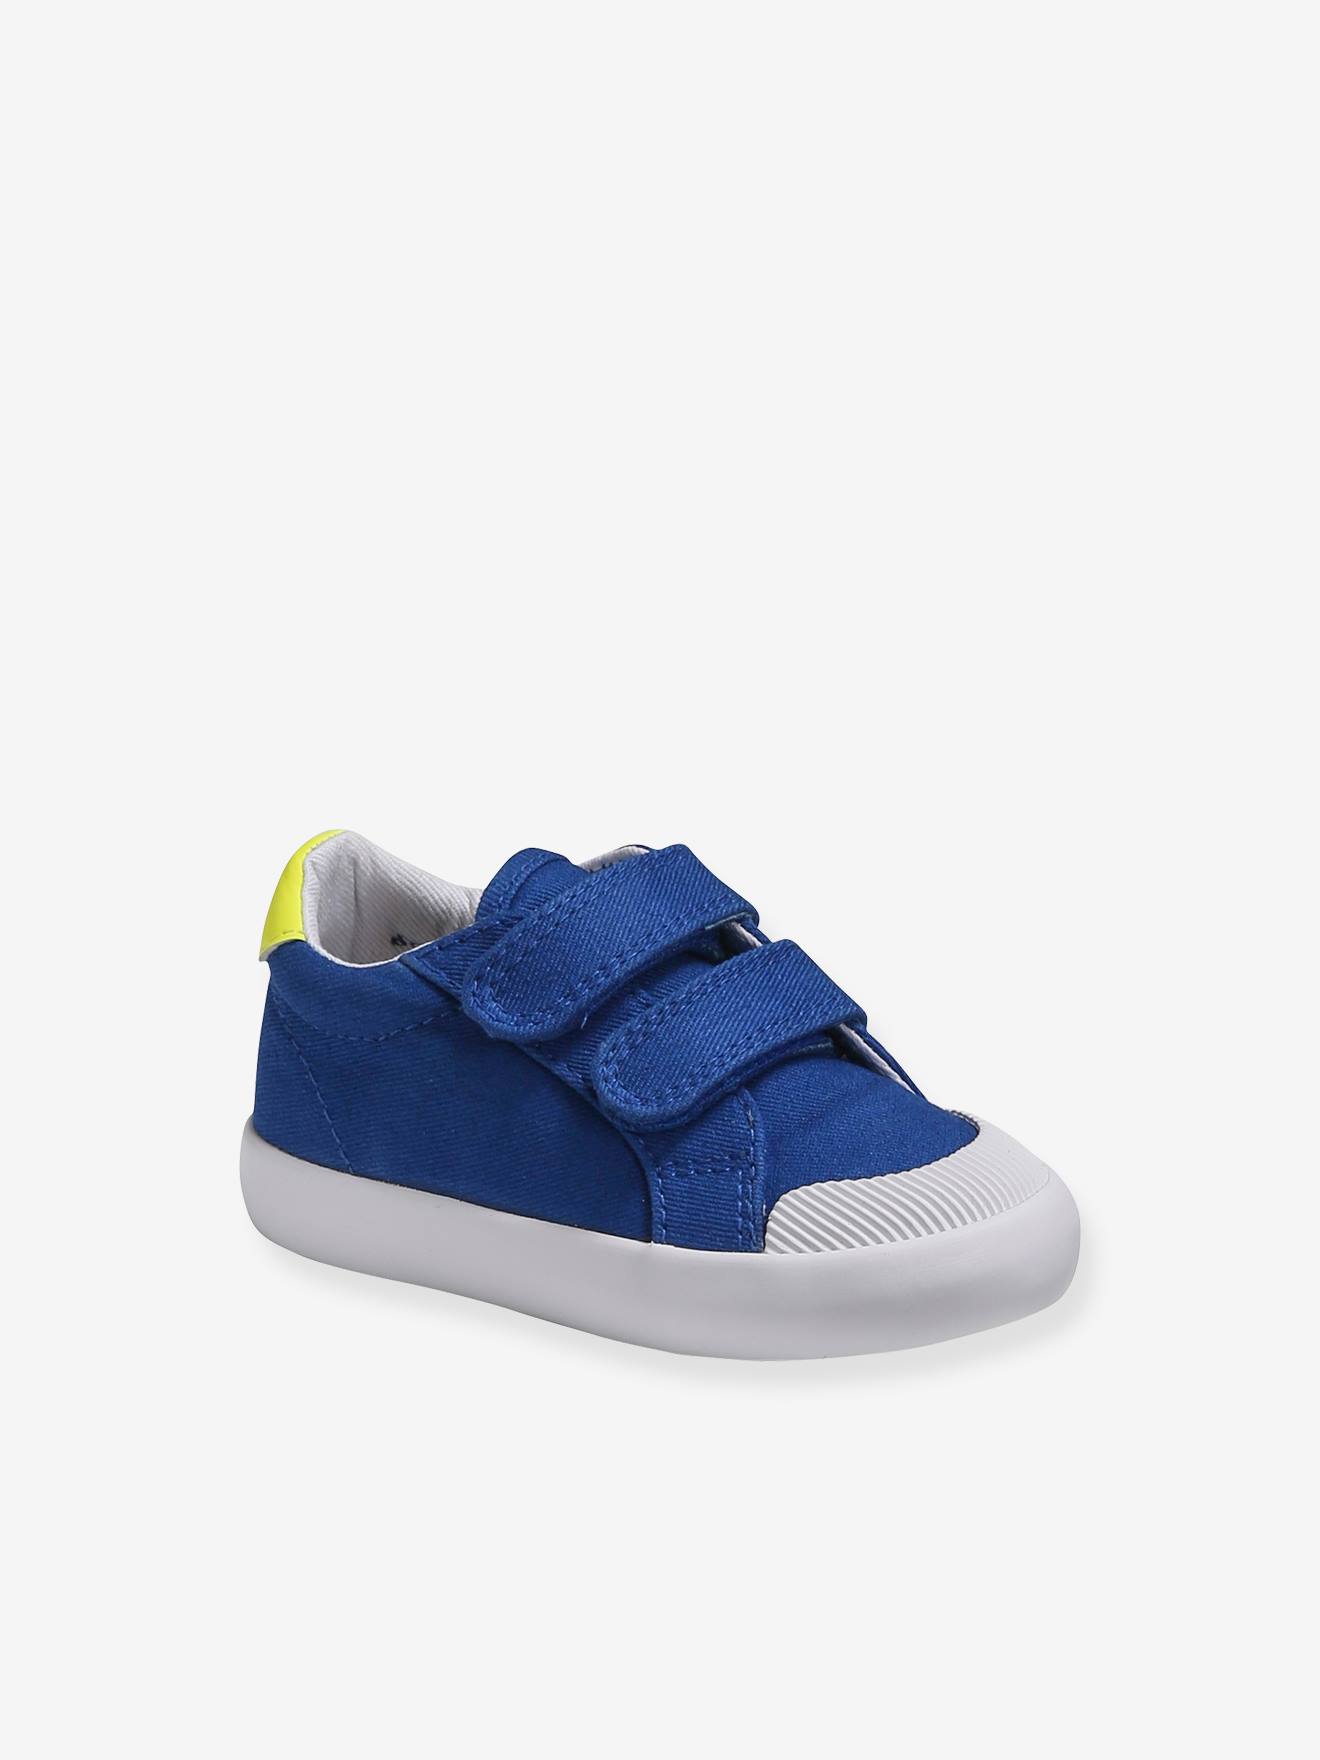 Zapatillas de tela con cierre autoadherente, bebé niño azul medio liso